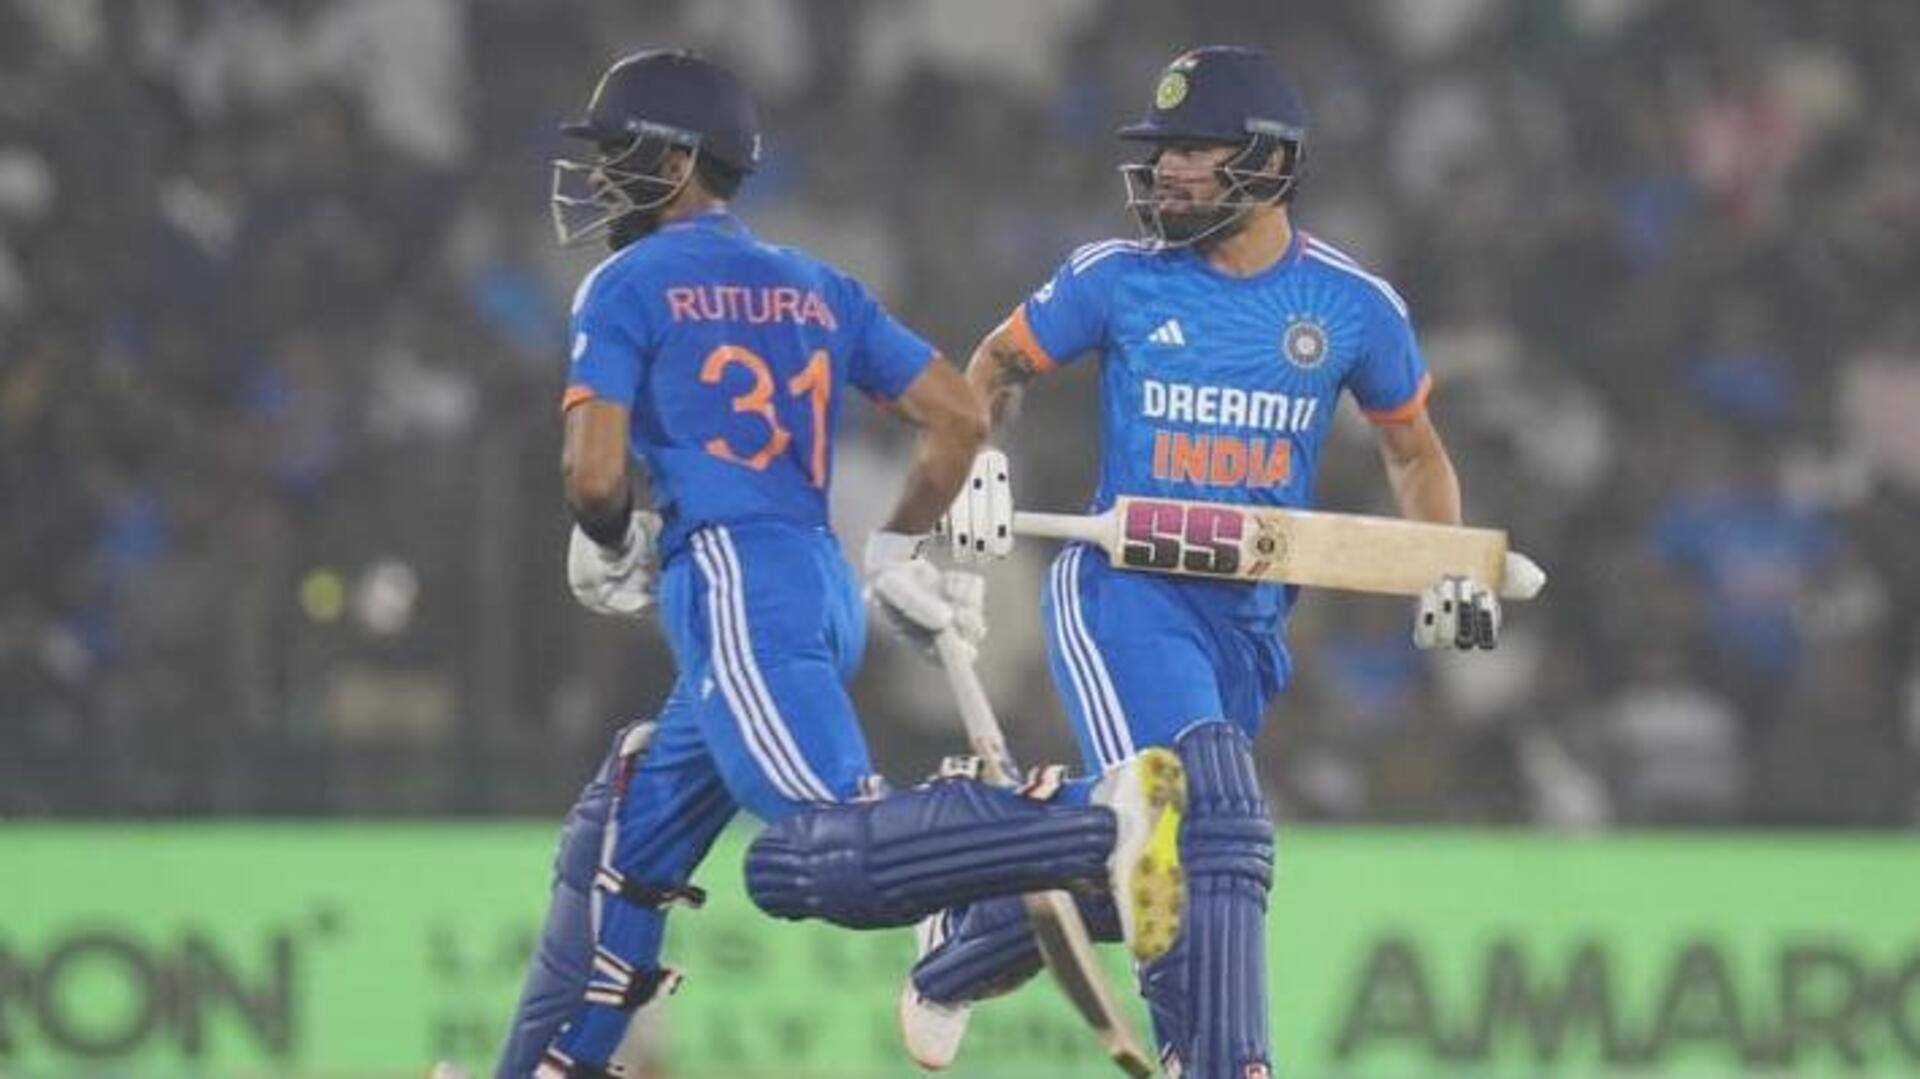 இந்தியா vs ஆஸ்திரேலியா ஐந்தாவது T20I : பிட்ச் மற்றும் வானிலை அறிக்கை